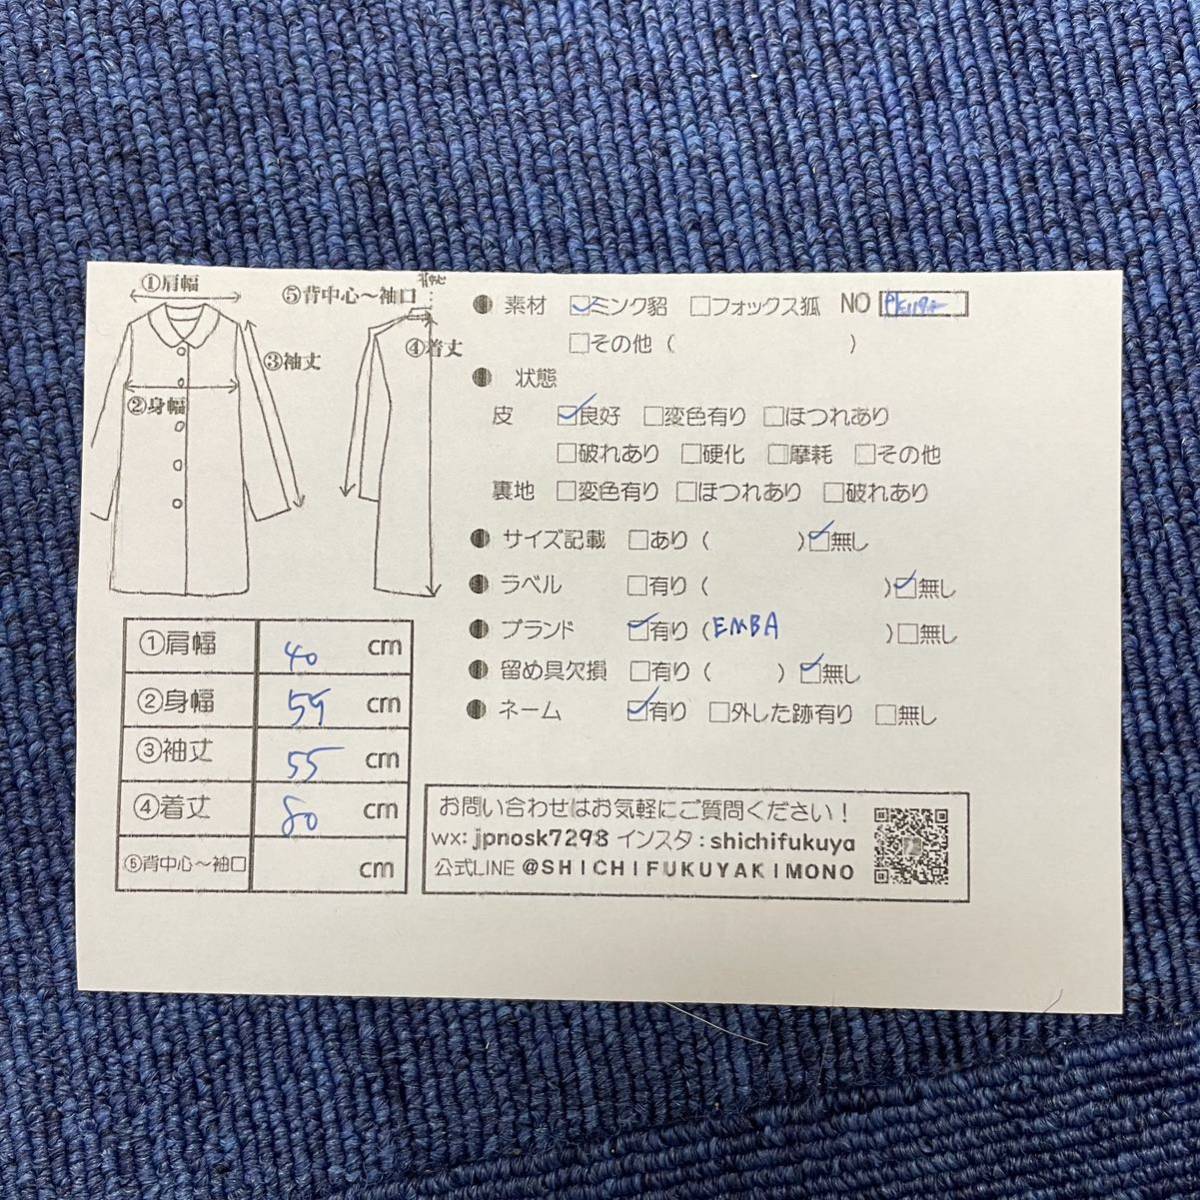 七福 fk1172 EMBA セミロングコート デザインコート ミンクコート 